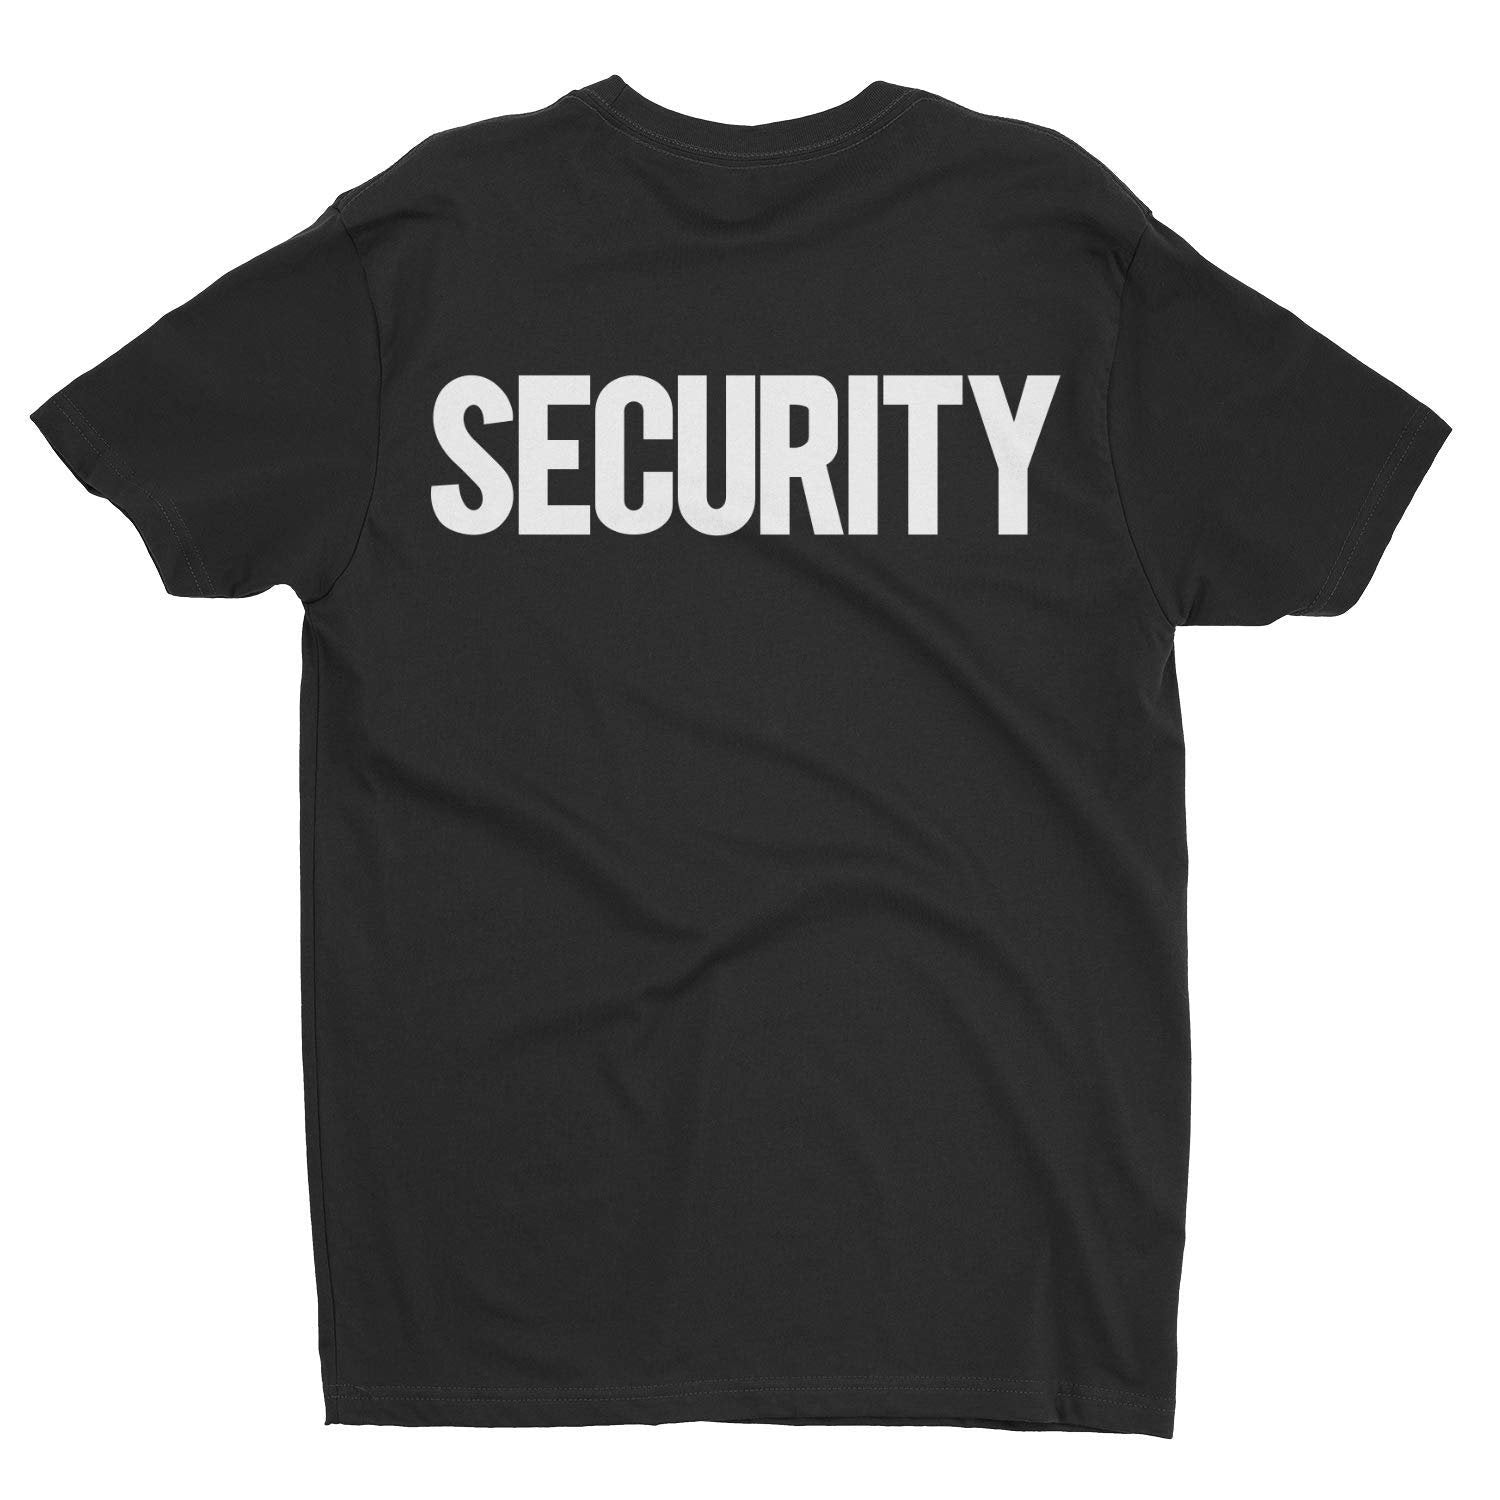 Men's Security Short Sleeve T-Shirt (Chest & Back Print, Black/White)